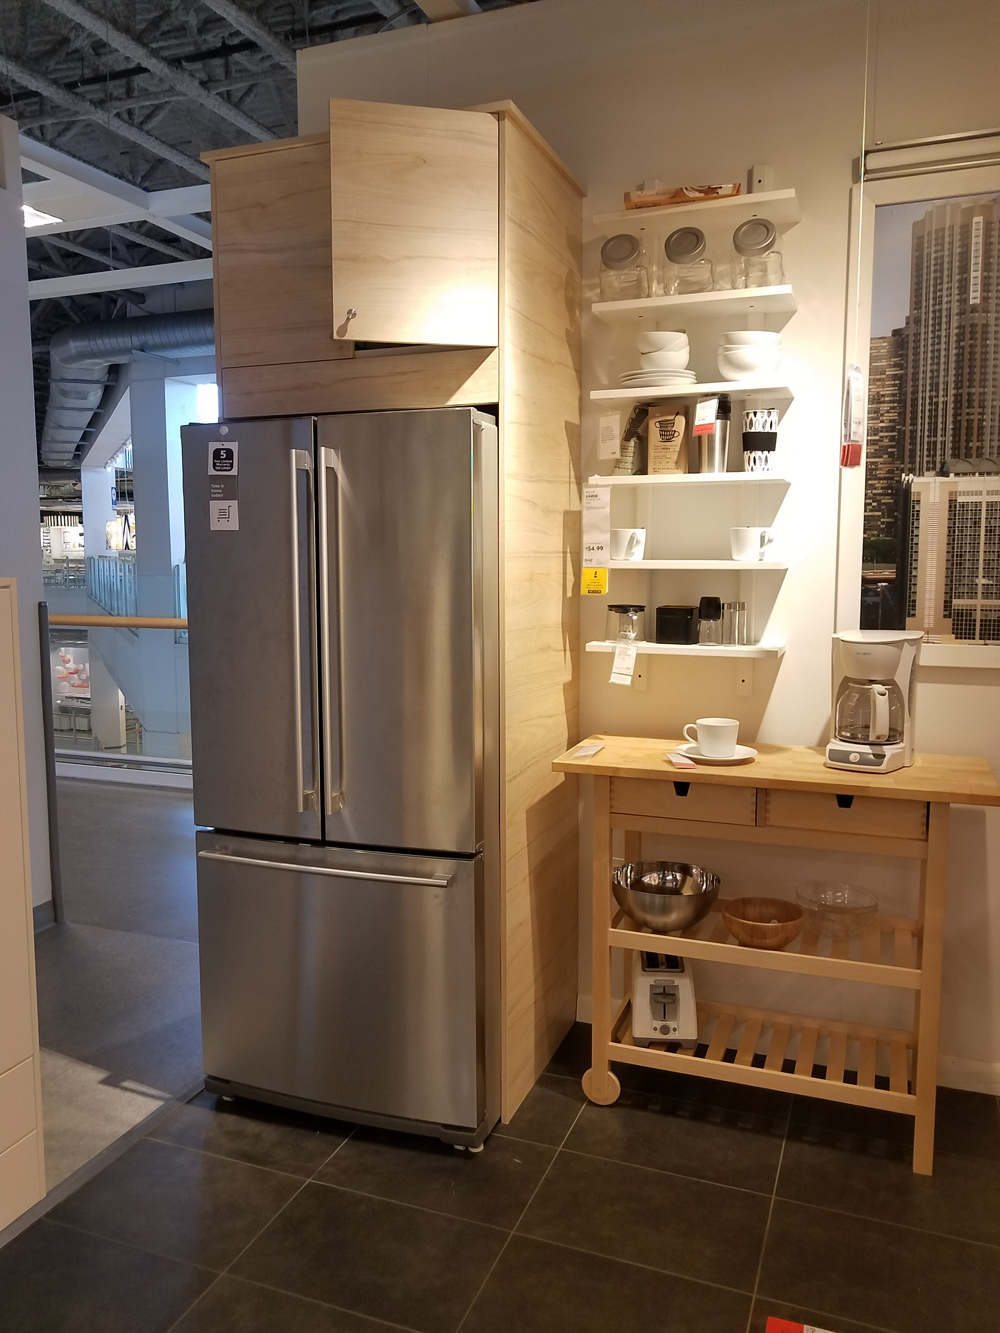 Jill Cataldo, Ikea Refrigerator Cabinet Installation